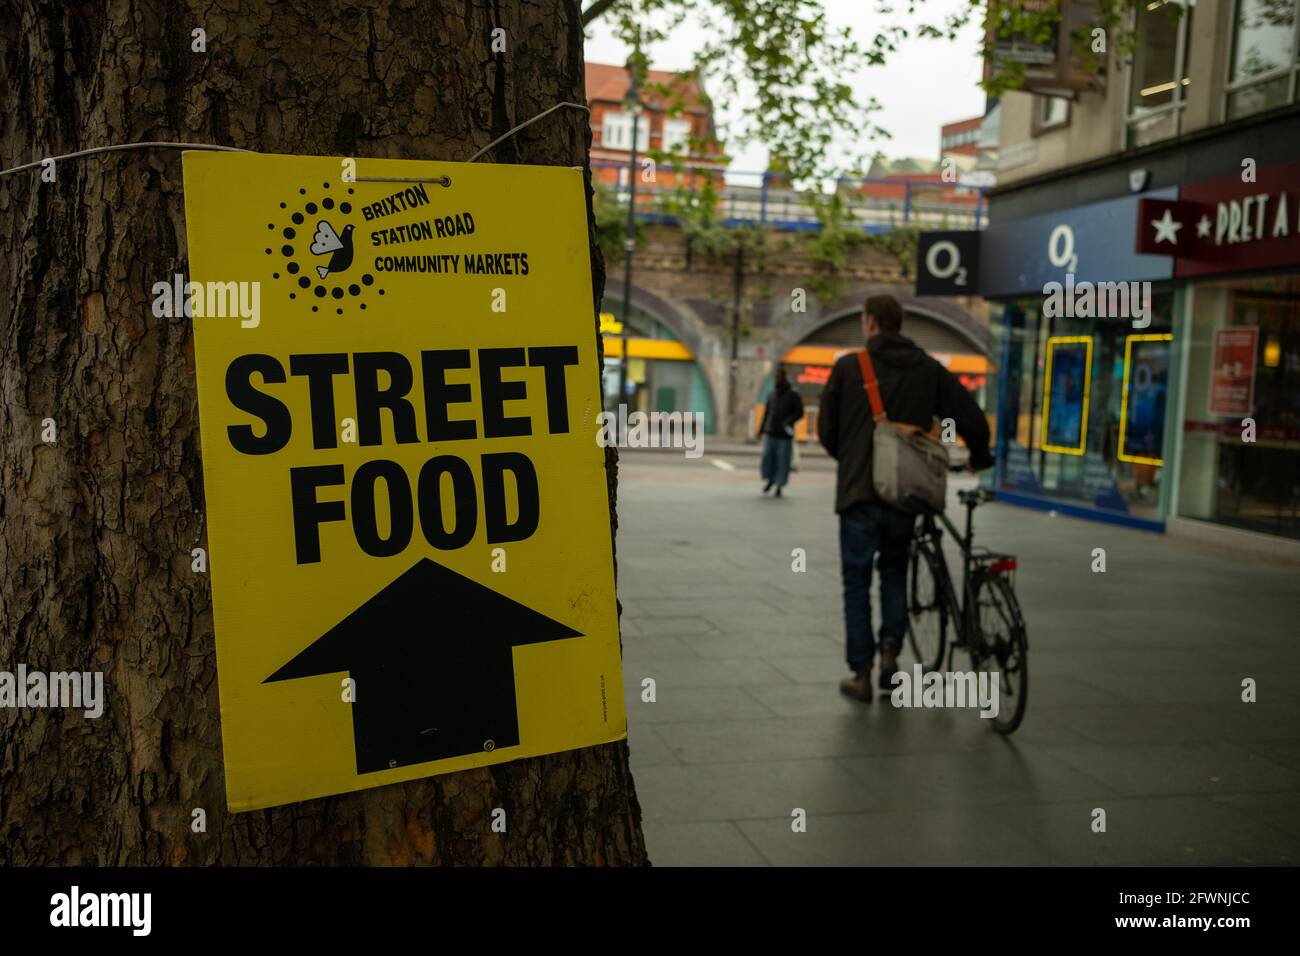 Brixton Londres, 2021 de mayo: Calle de la señal del mercado de alimentos que anuncia los puestos de comida de la comunidad en Station Road. Foto de stock